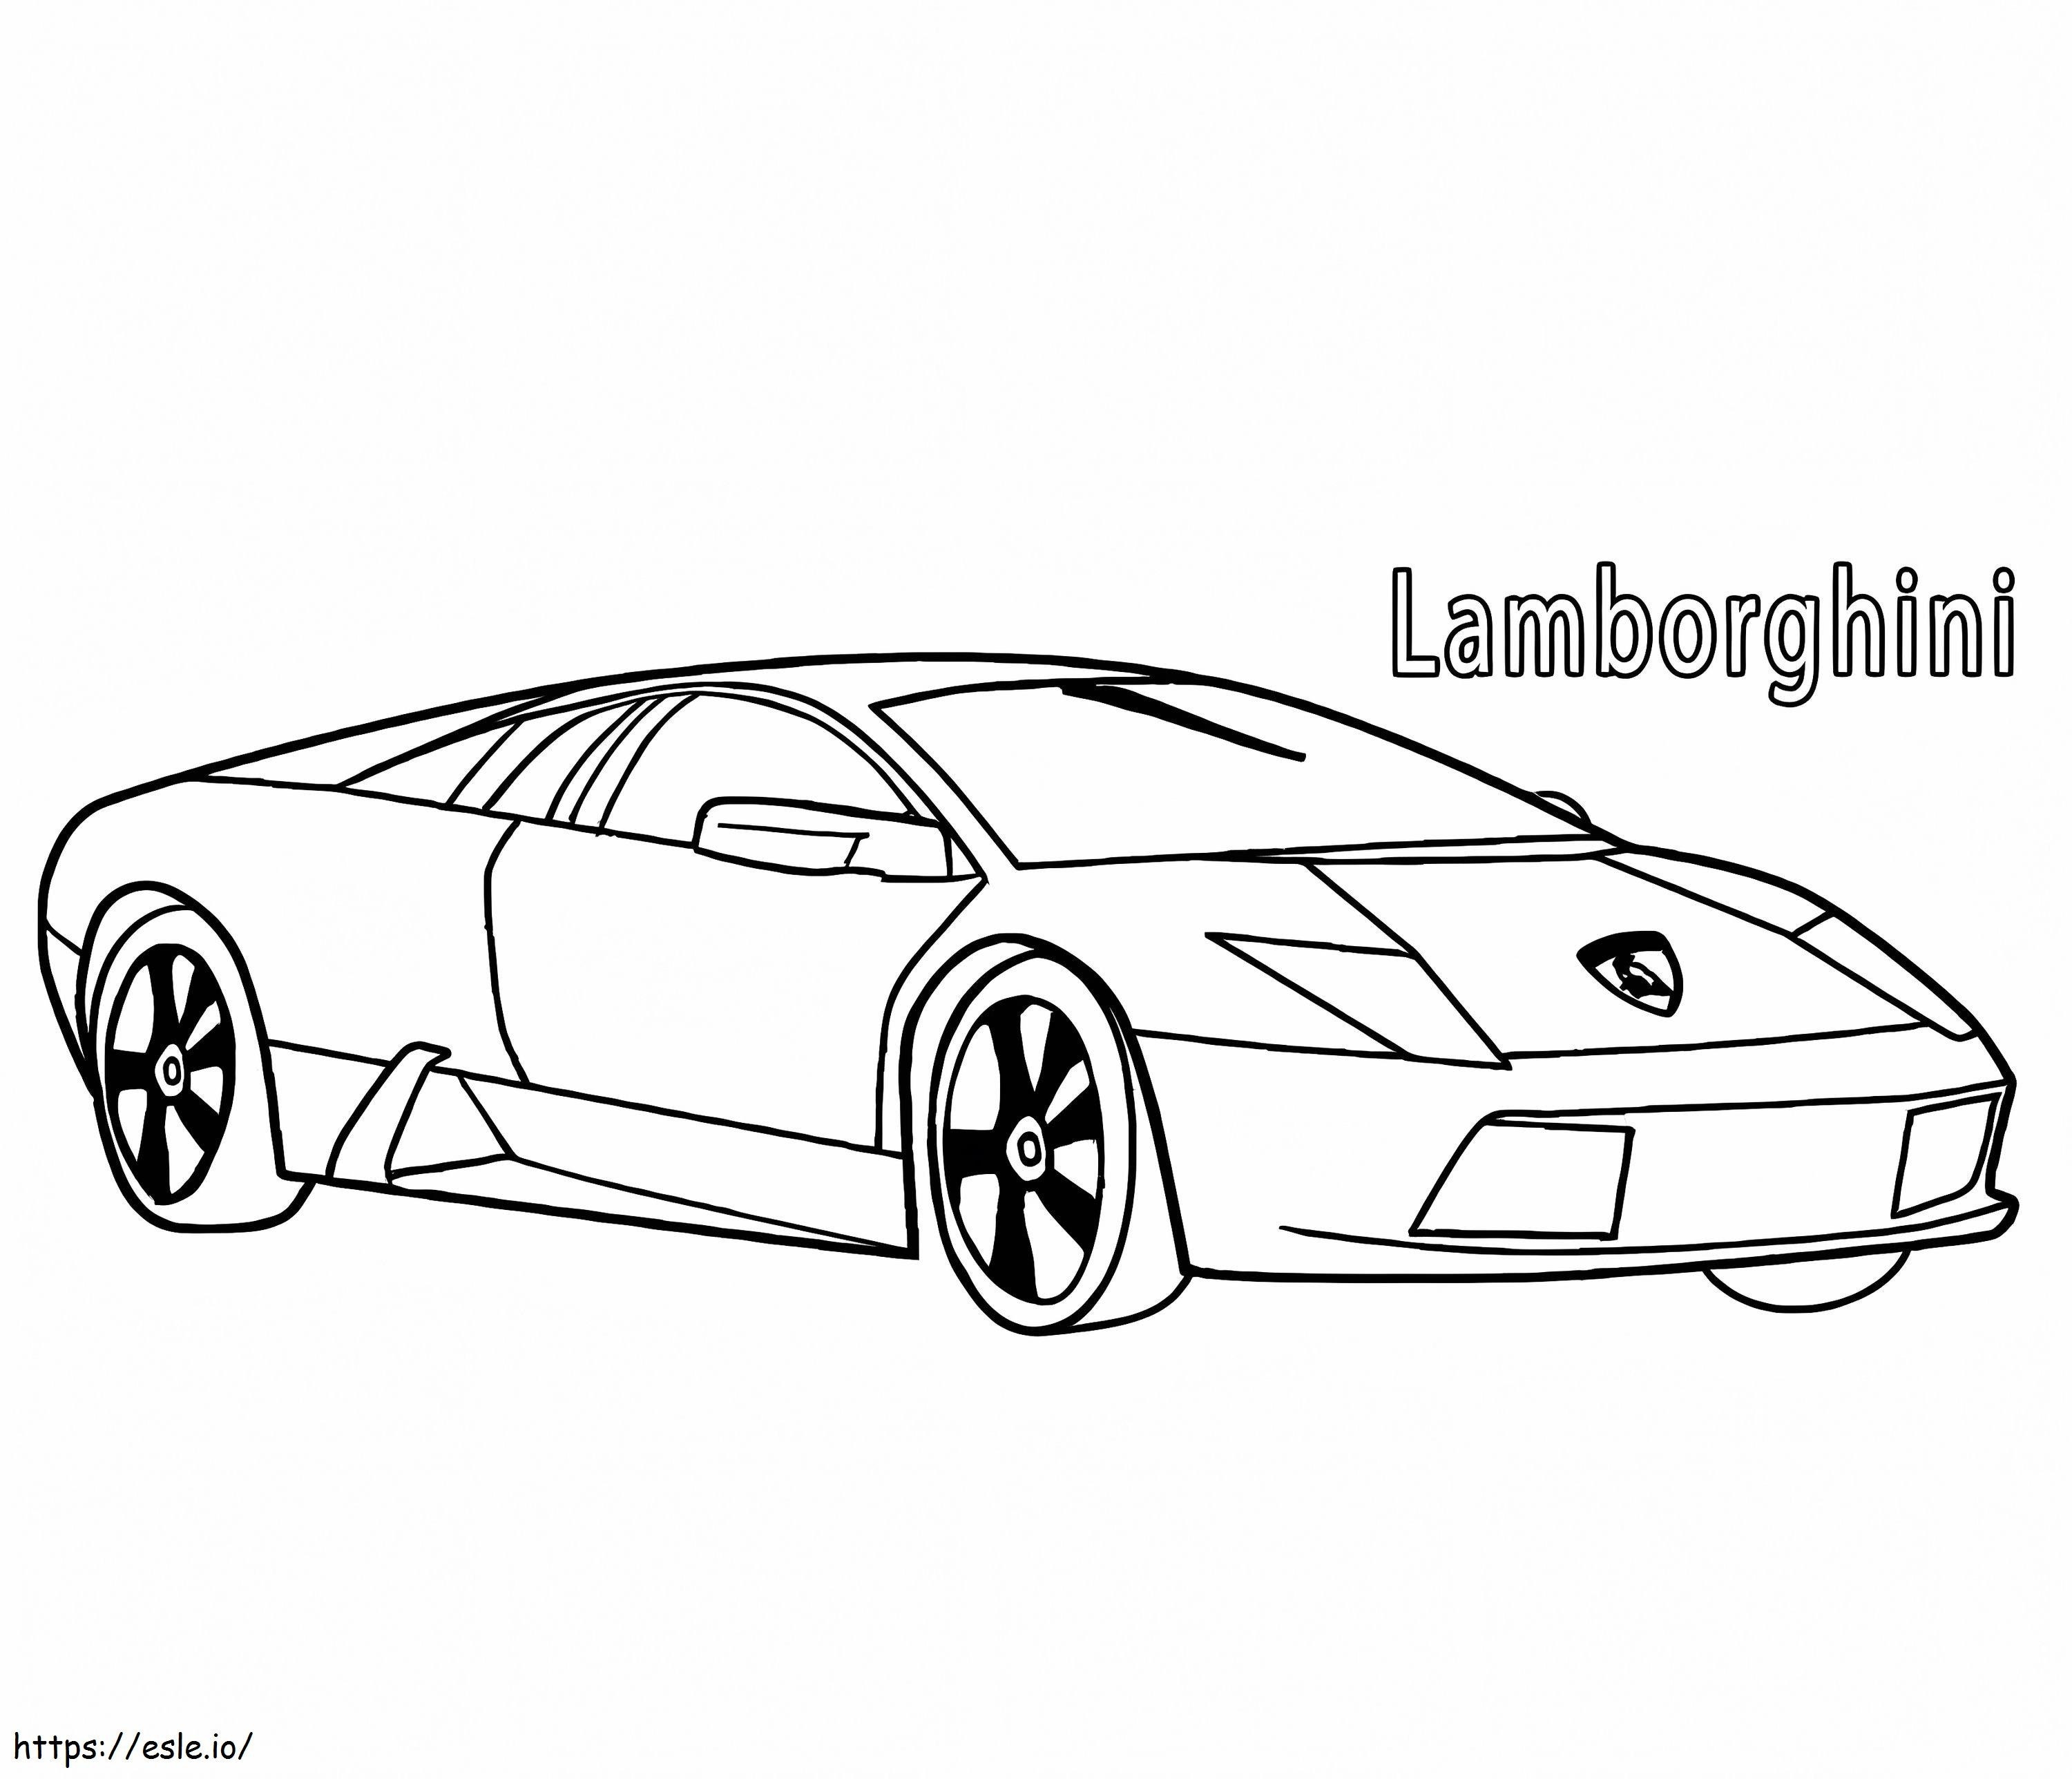 Lamborghini 3 ausmalbilder